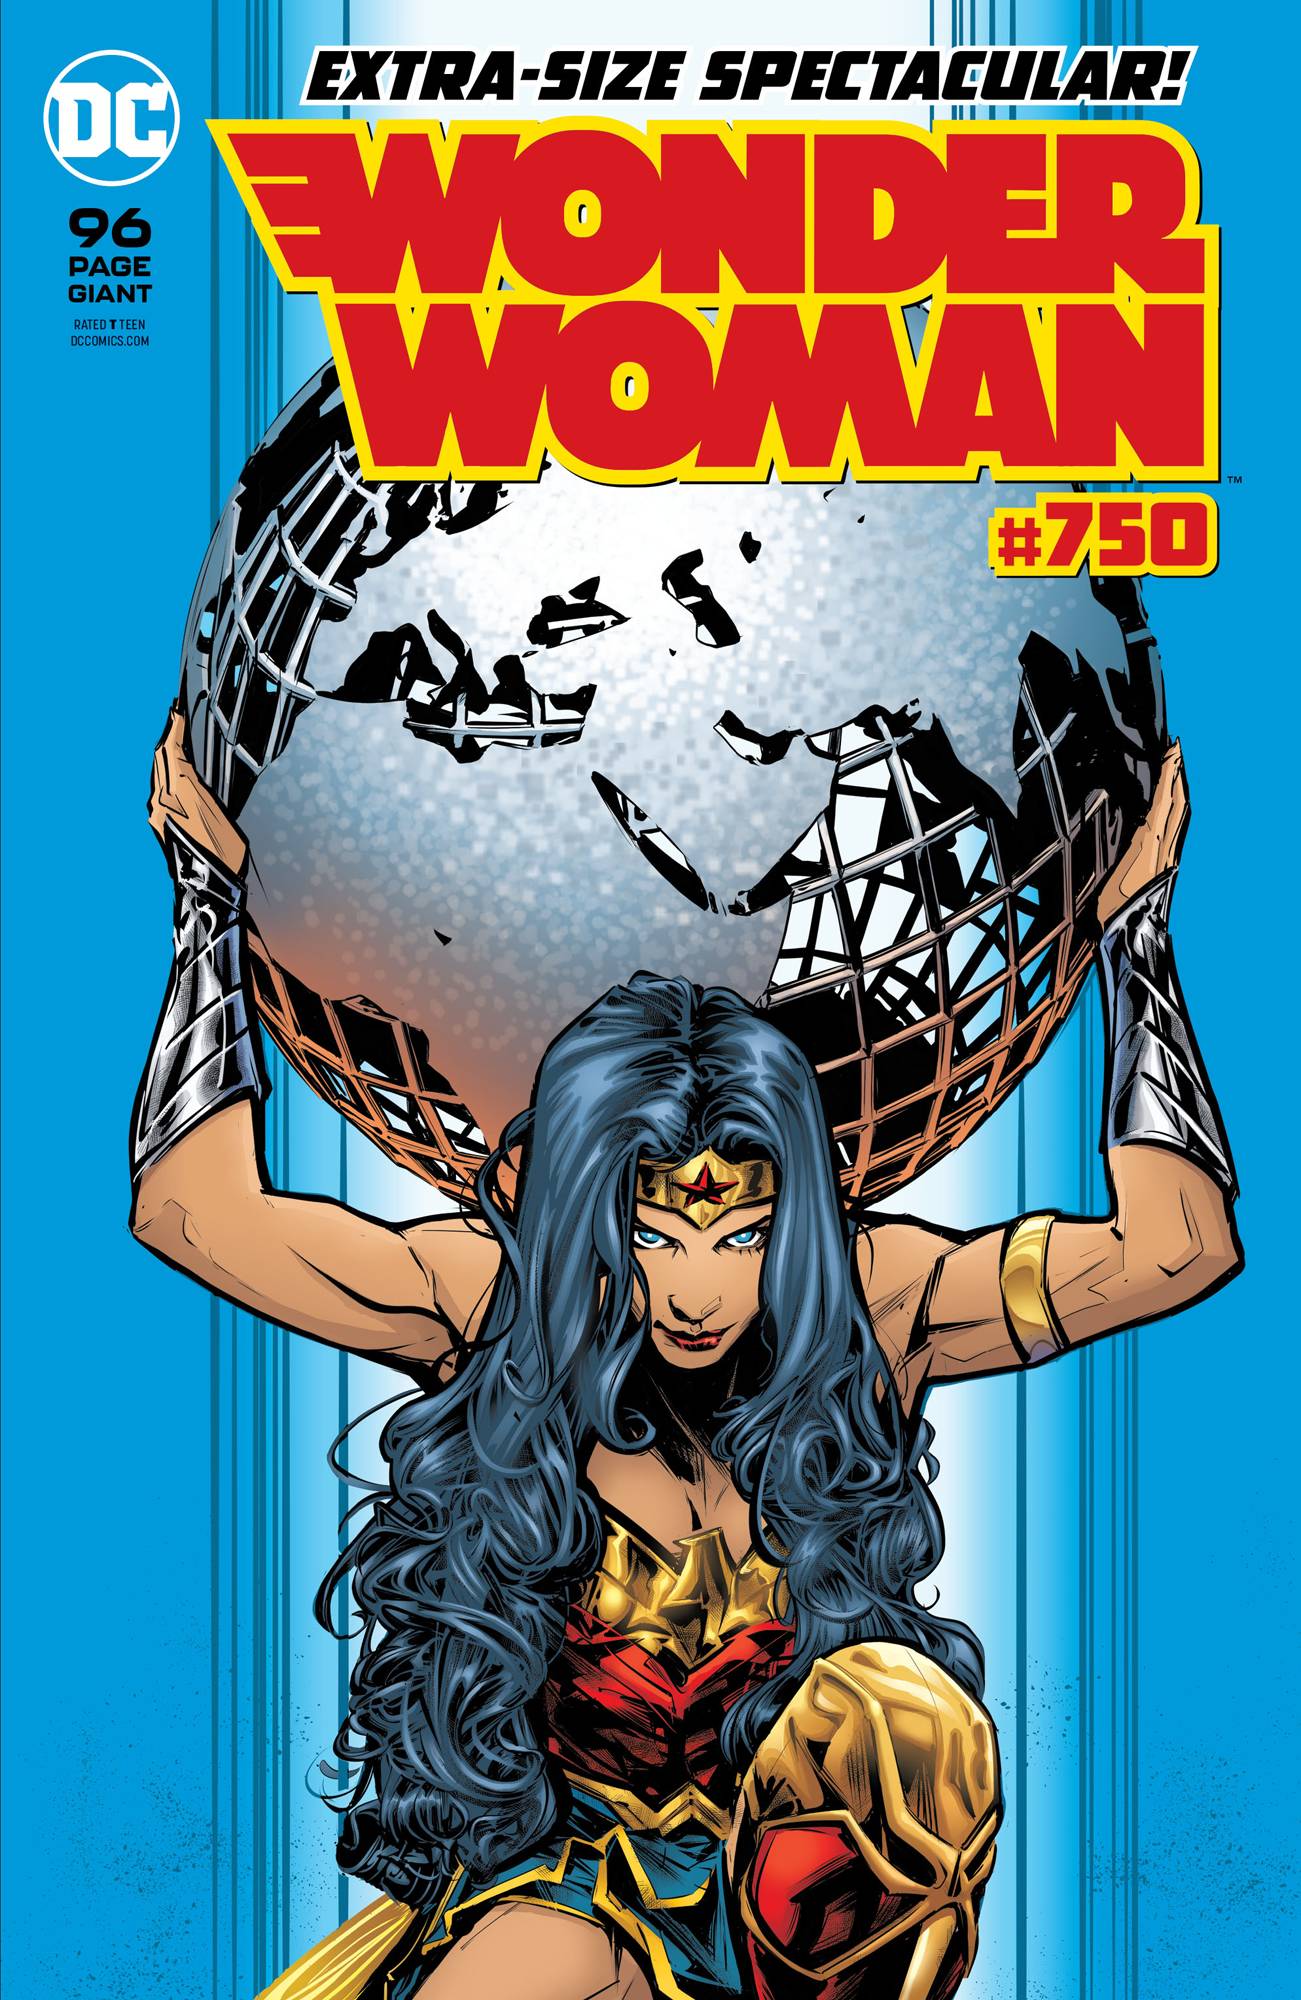 NOV190399 - WONDER WOMAN #750 - Free Comic Book Day